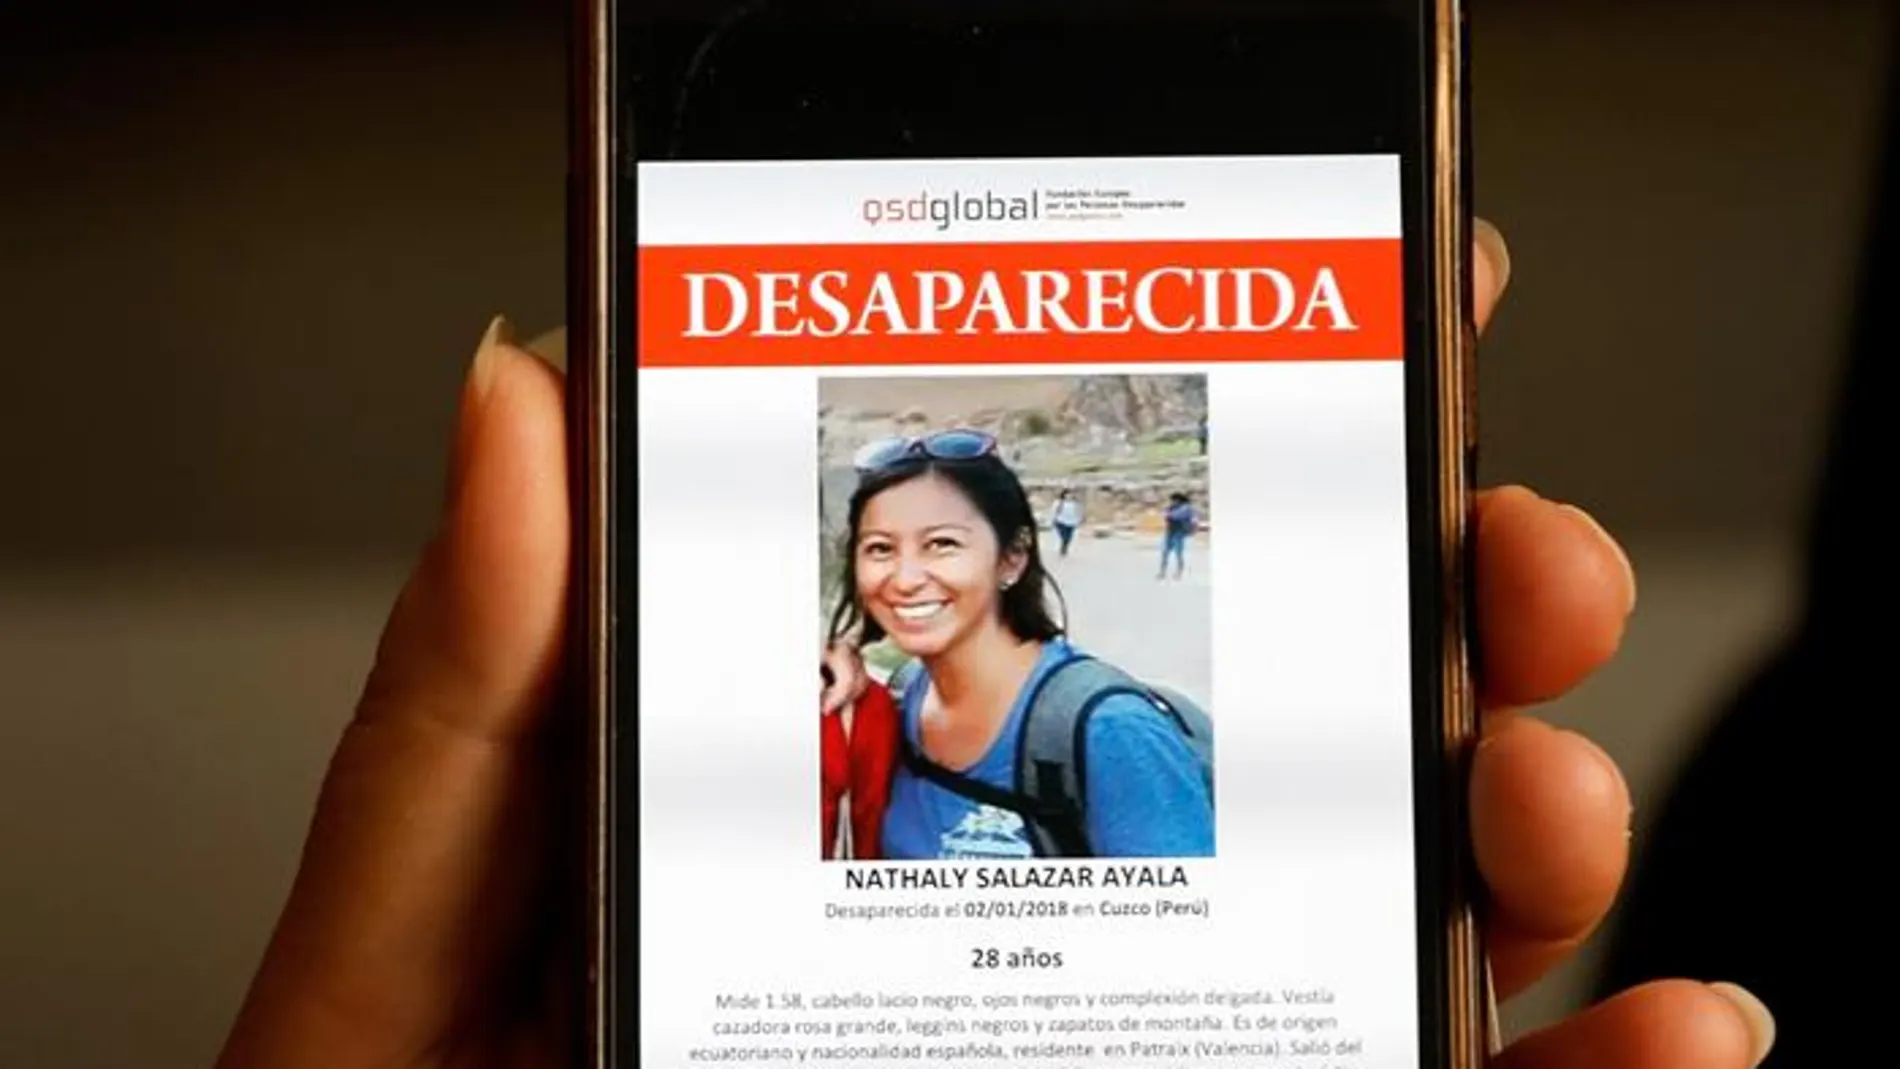 Imagen de Nathaly Salazar, la joven desaparecida desde el pasado 1 de enero en Perú